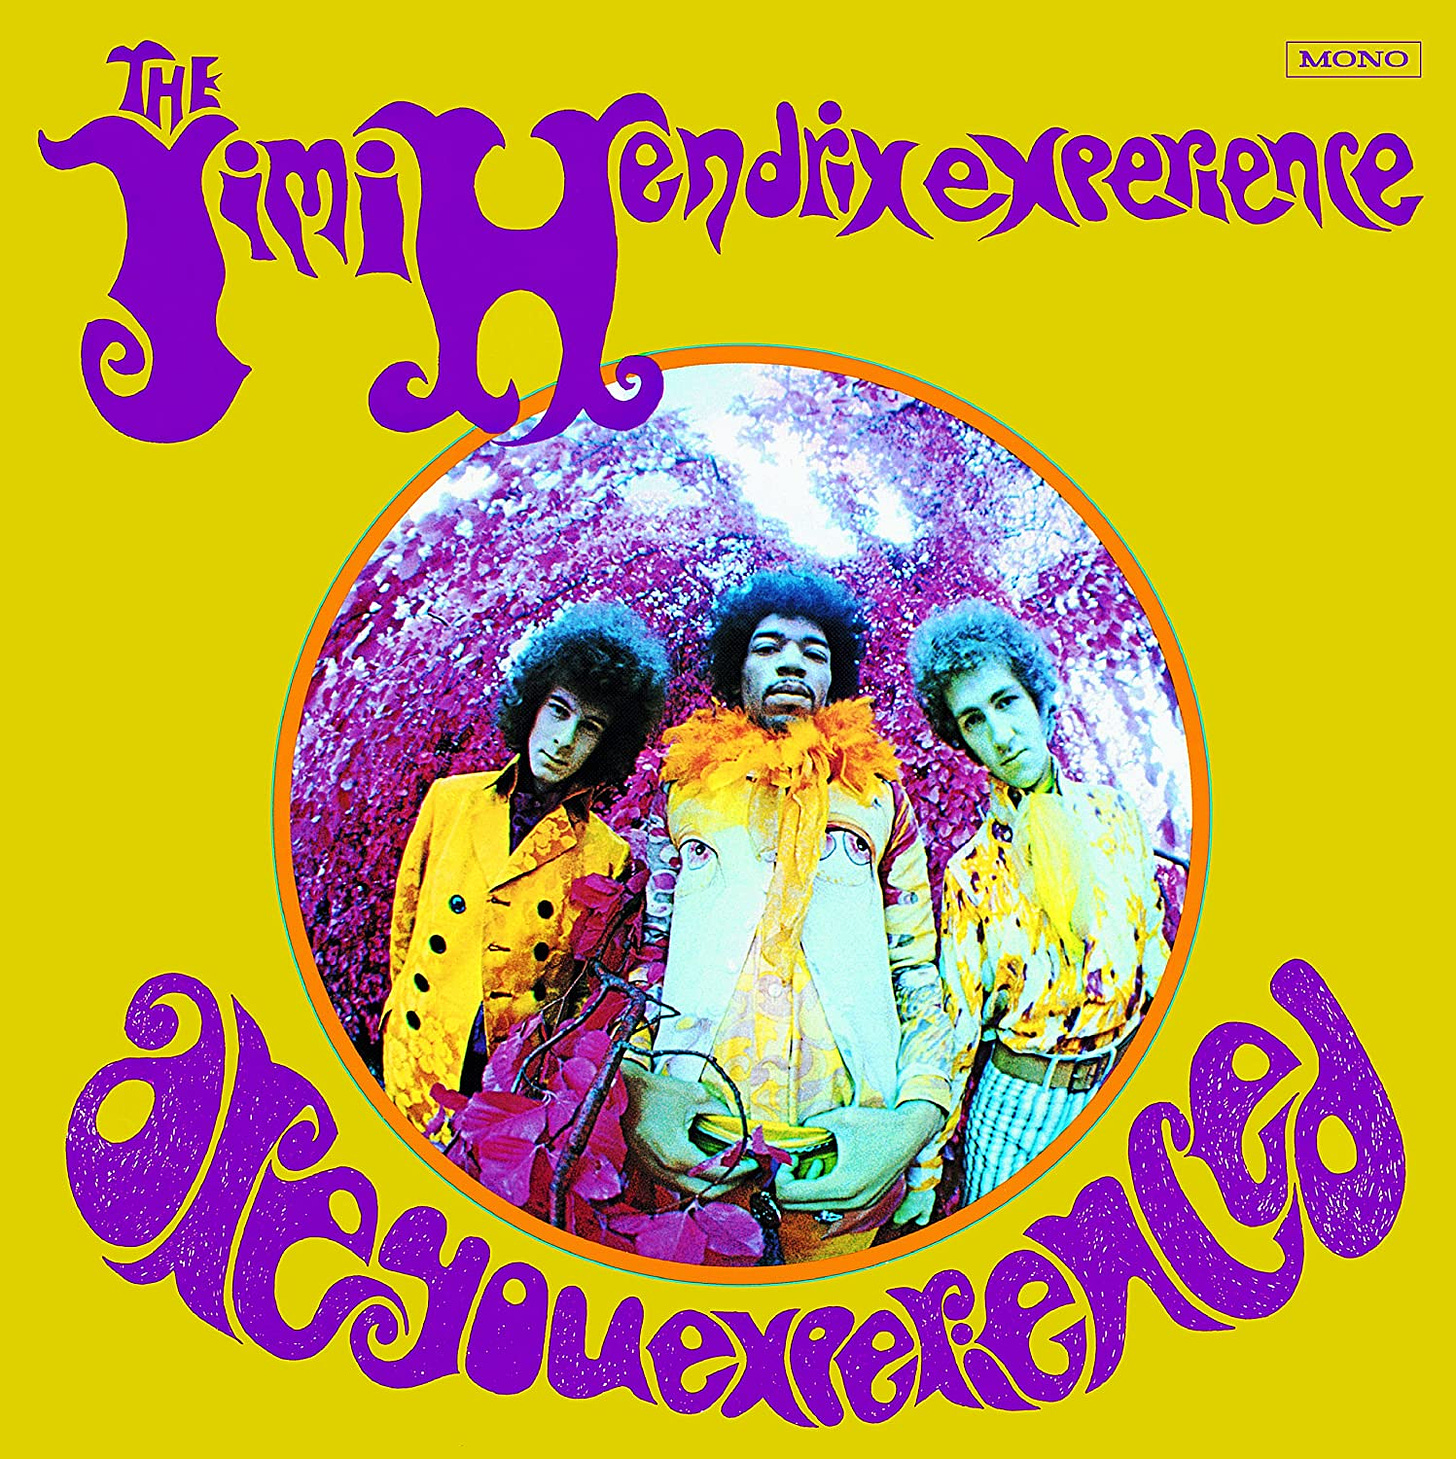 Are You Experienced (US mono) [Vinyl]: Amazon.co.uk: CDs & Vinyl